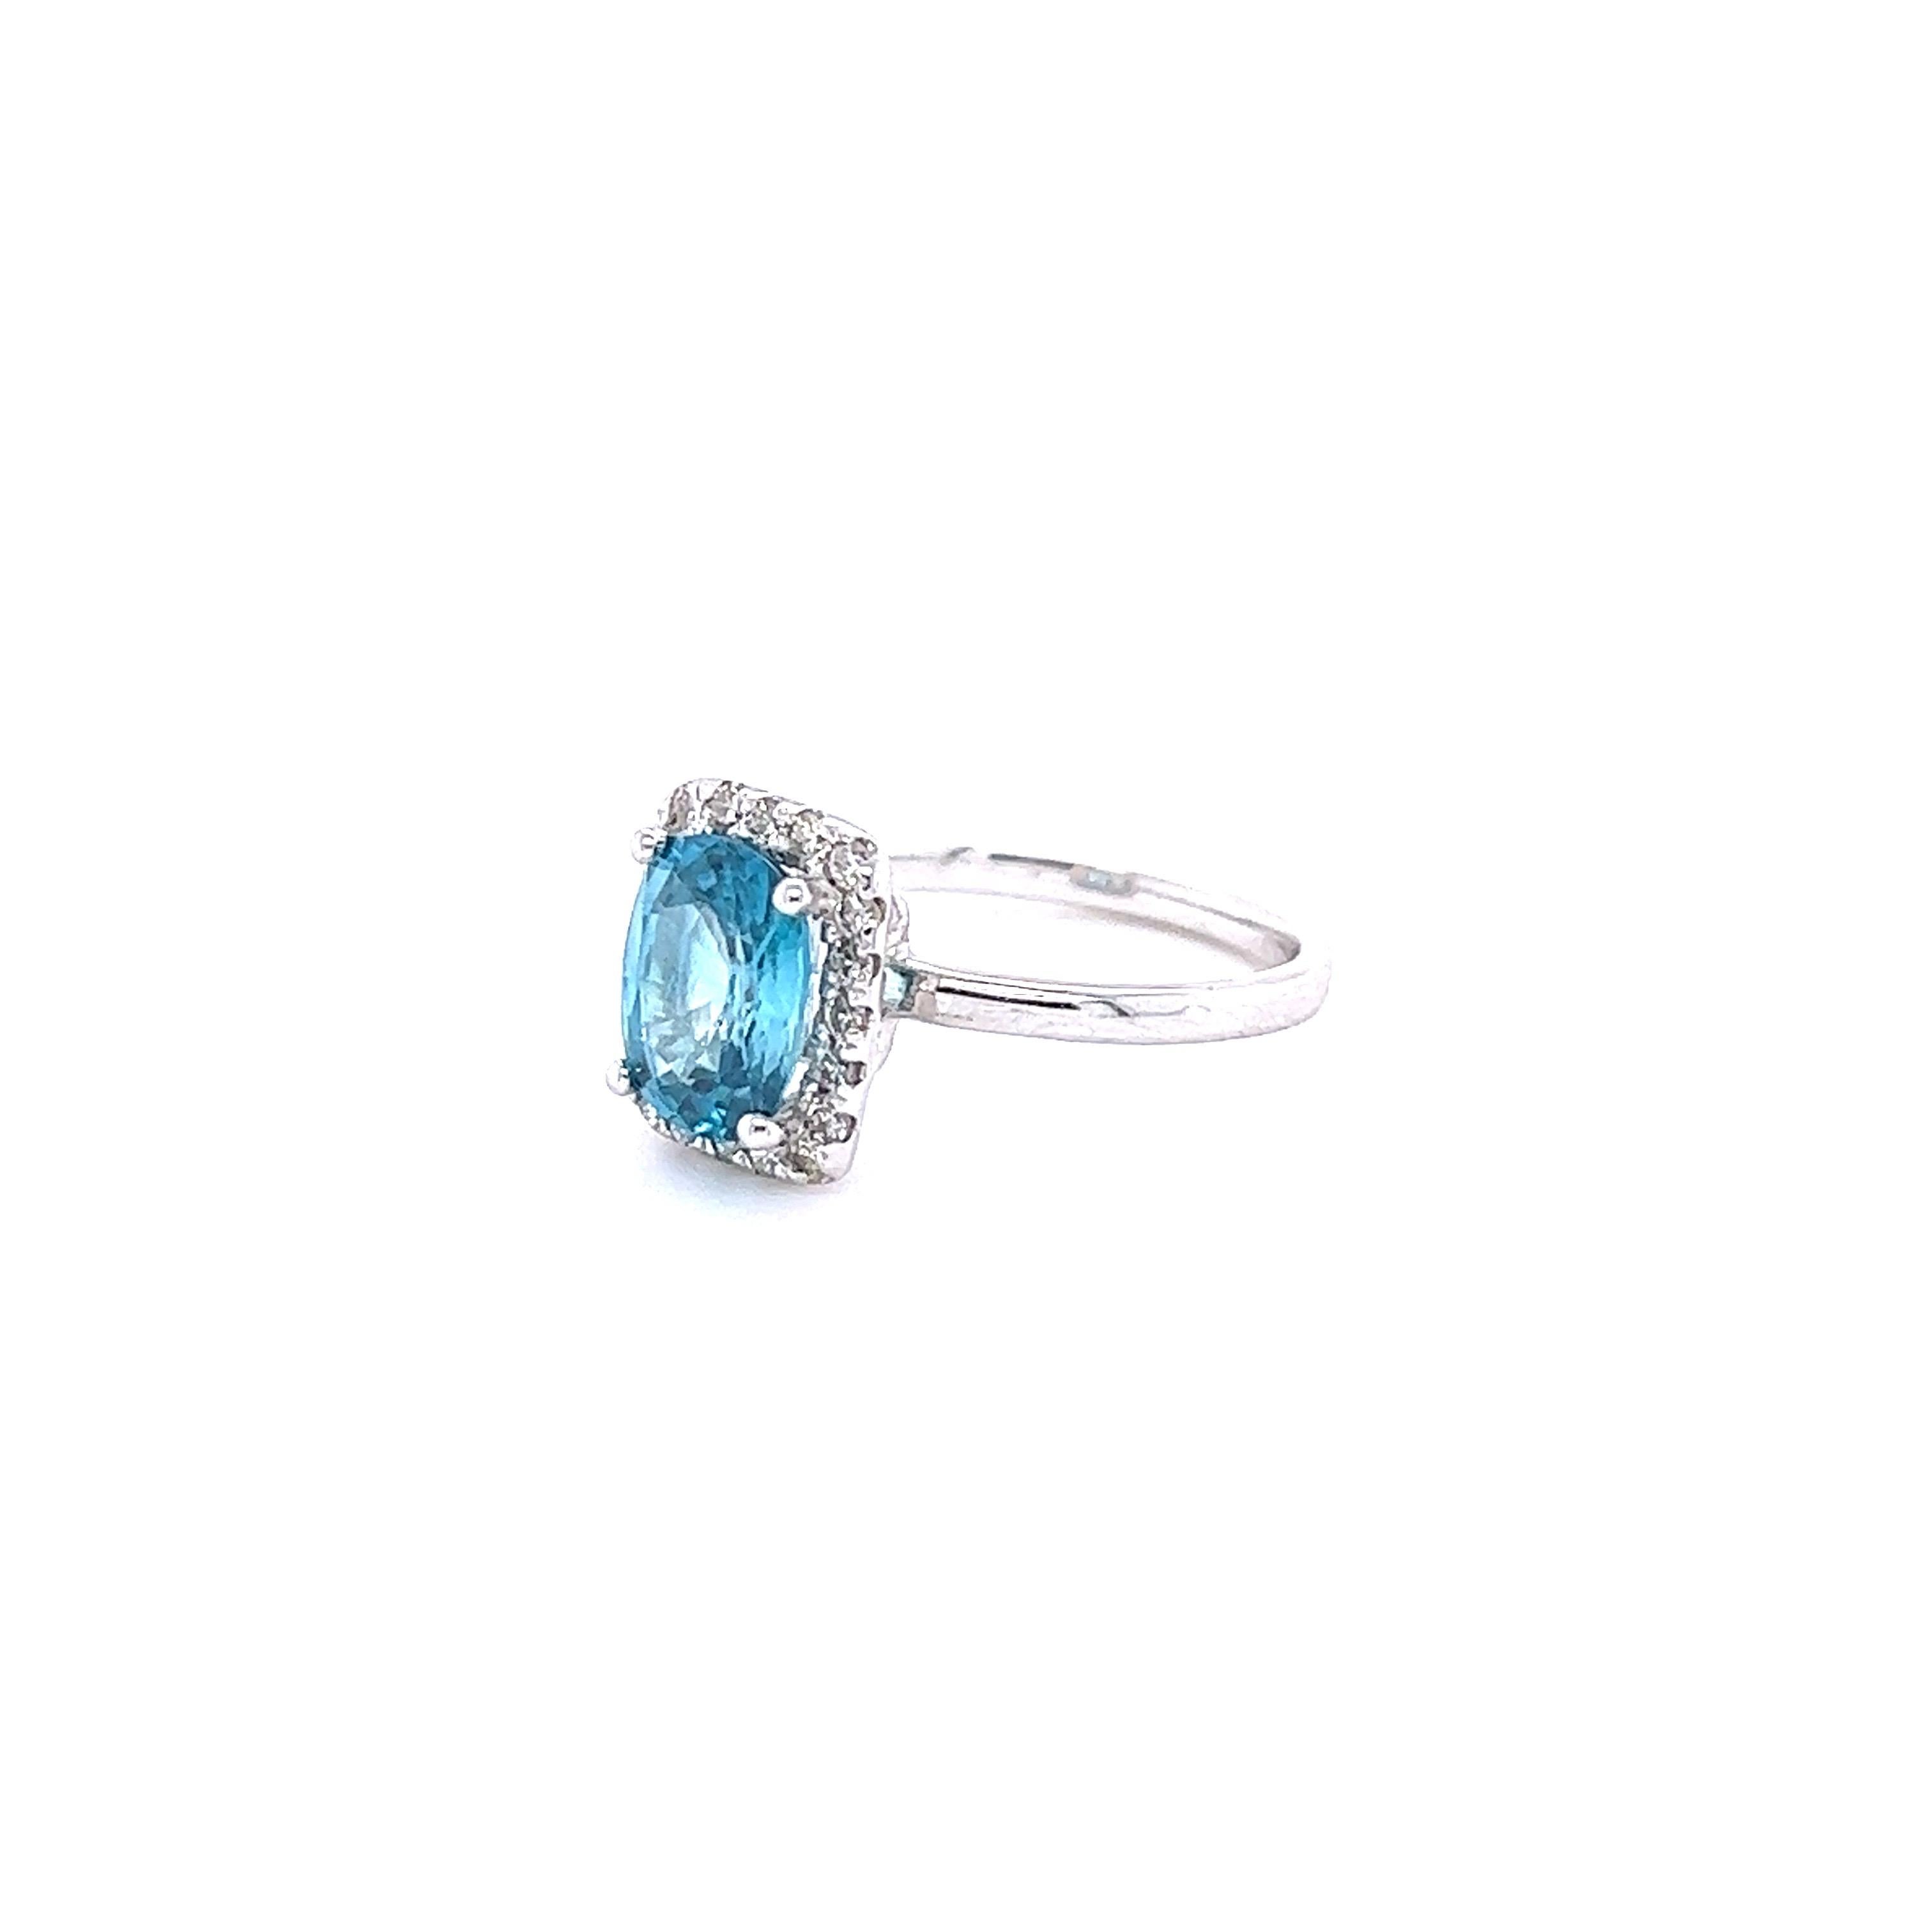 Ein schöner Ring mit blauem Zirkon und Diamant, der ein schöner Verlobungsring oder einfach ein Alltagsring sein kann!
Blauer Zirkon ist ein Naturstein, der hauptsächlich in Sri Lanka, Myanmar und Australien abgebaut wird.  
Dieser Ring hat einen